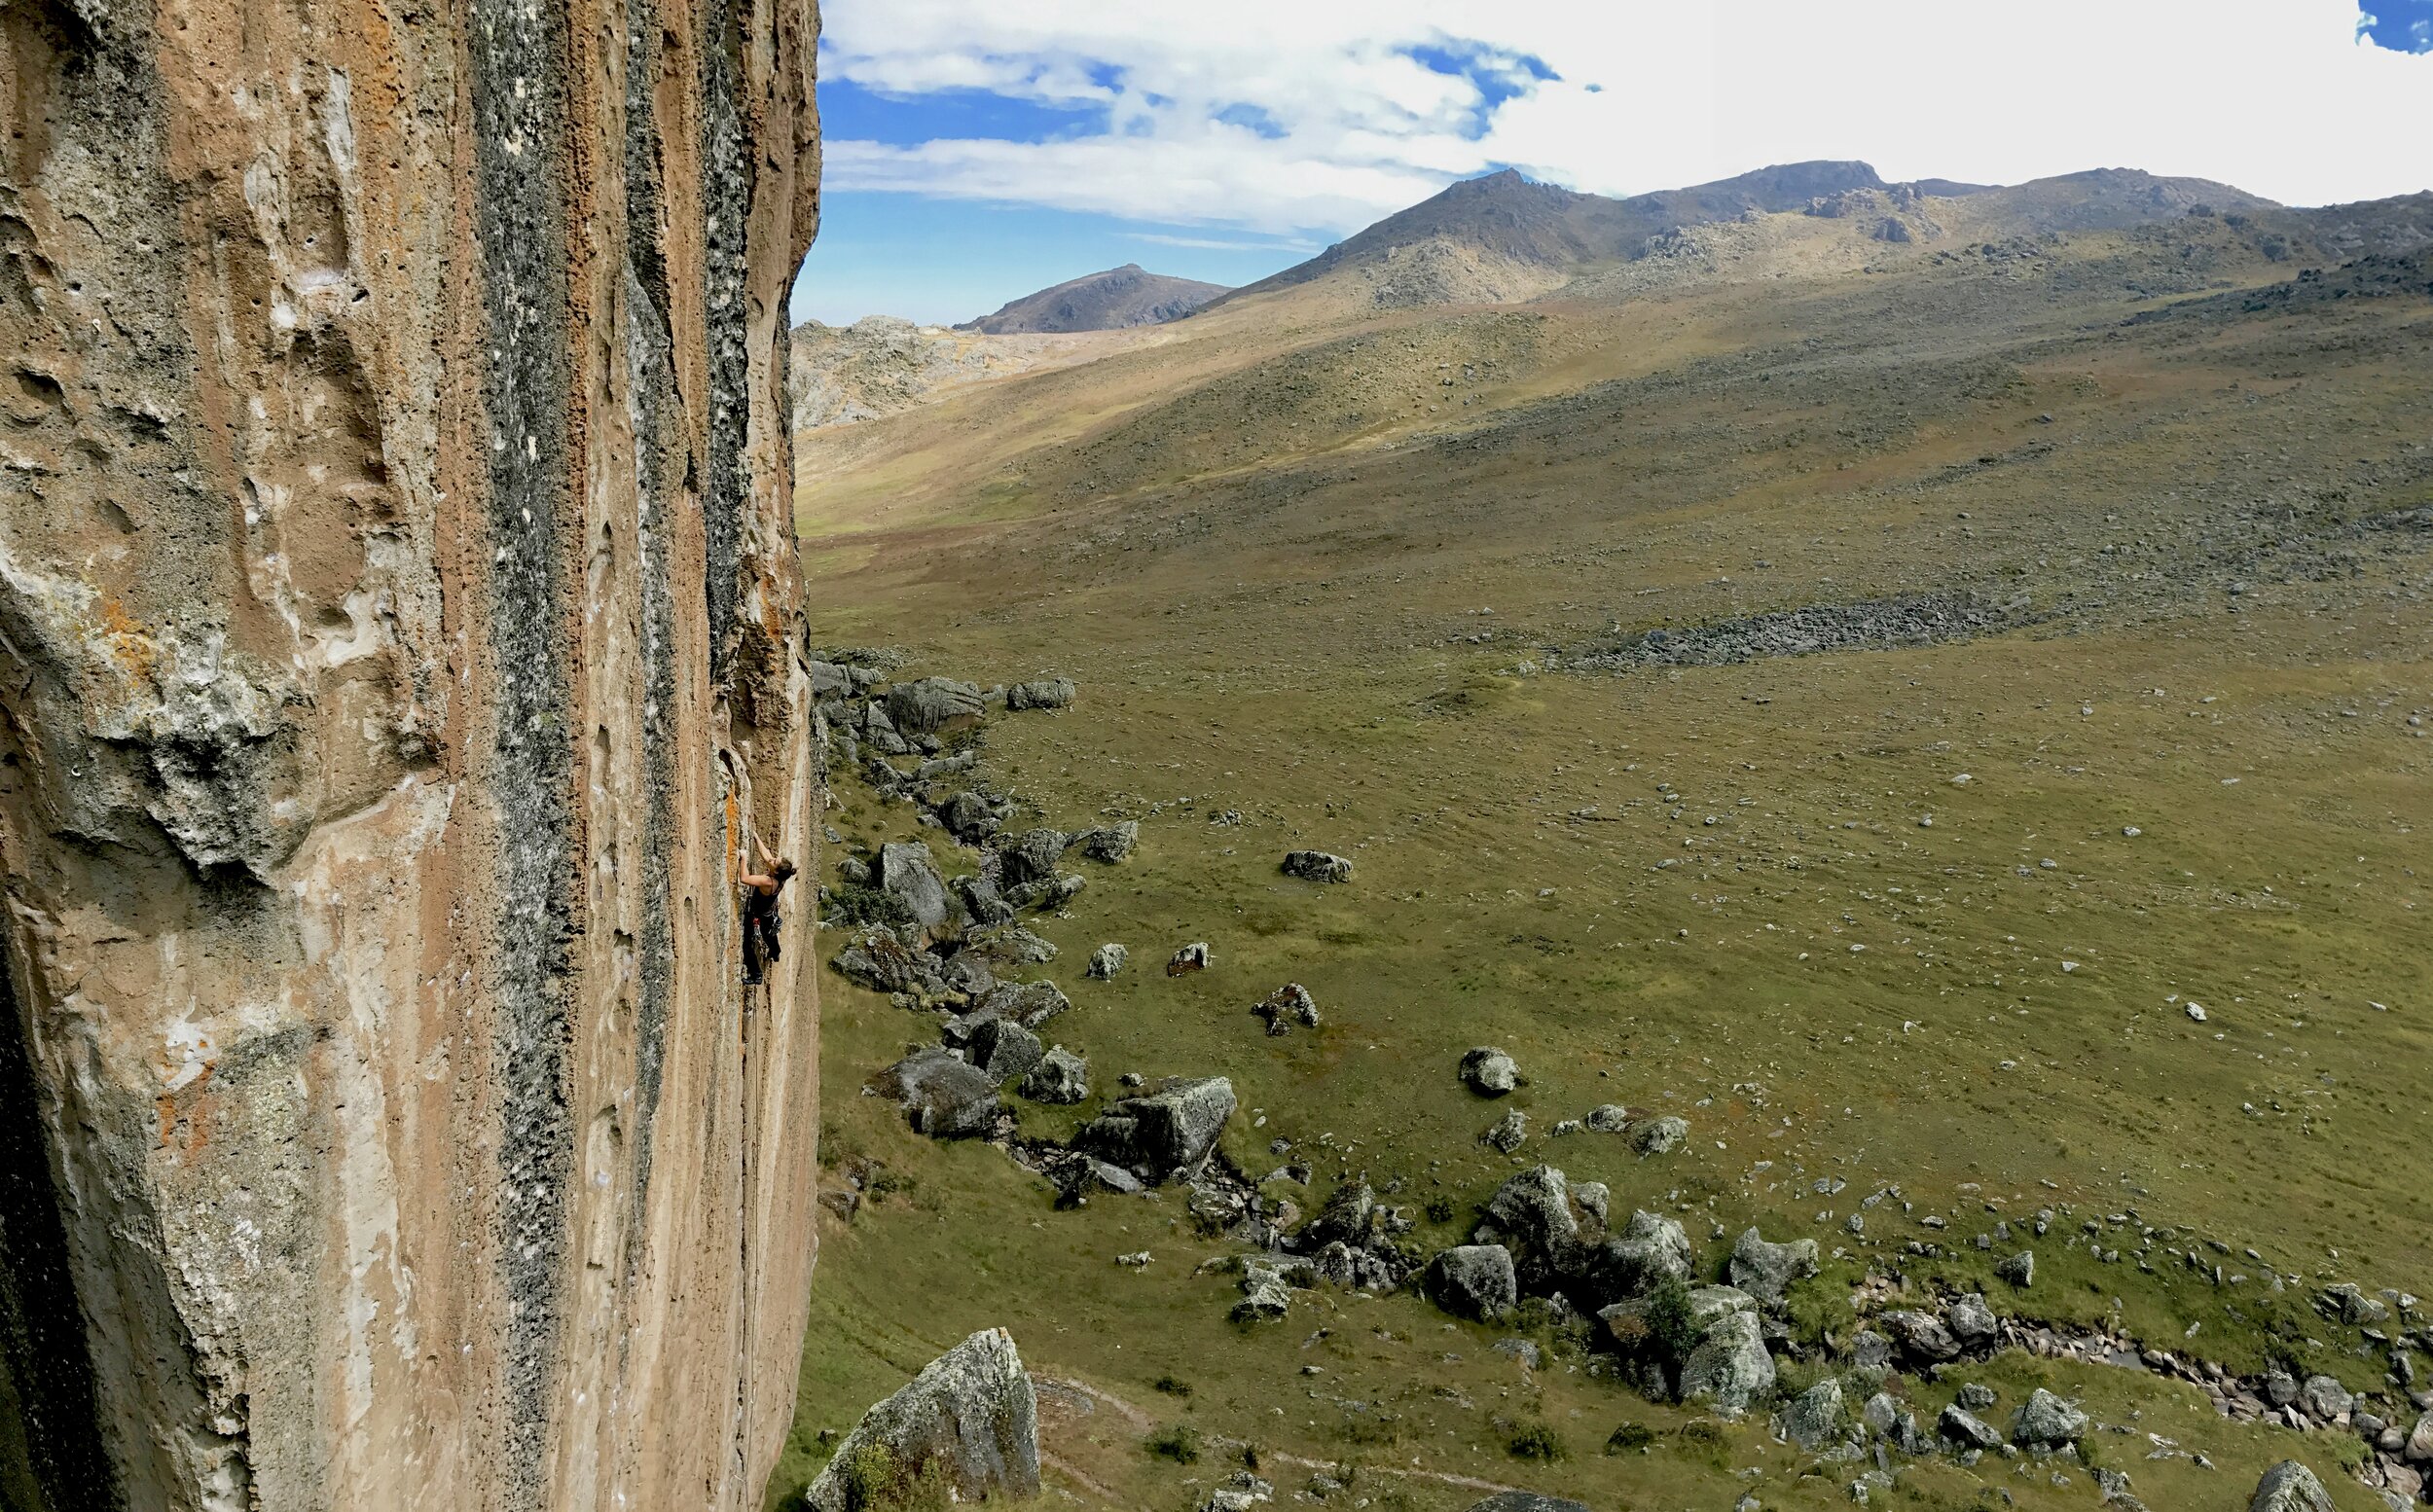  Rock climbing at 14,000’ at Hatun Machay, Peru. 